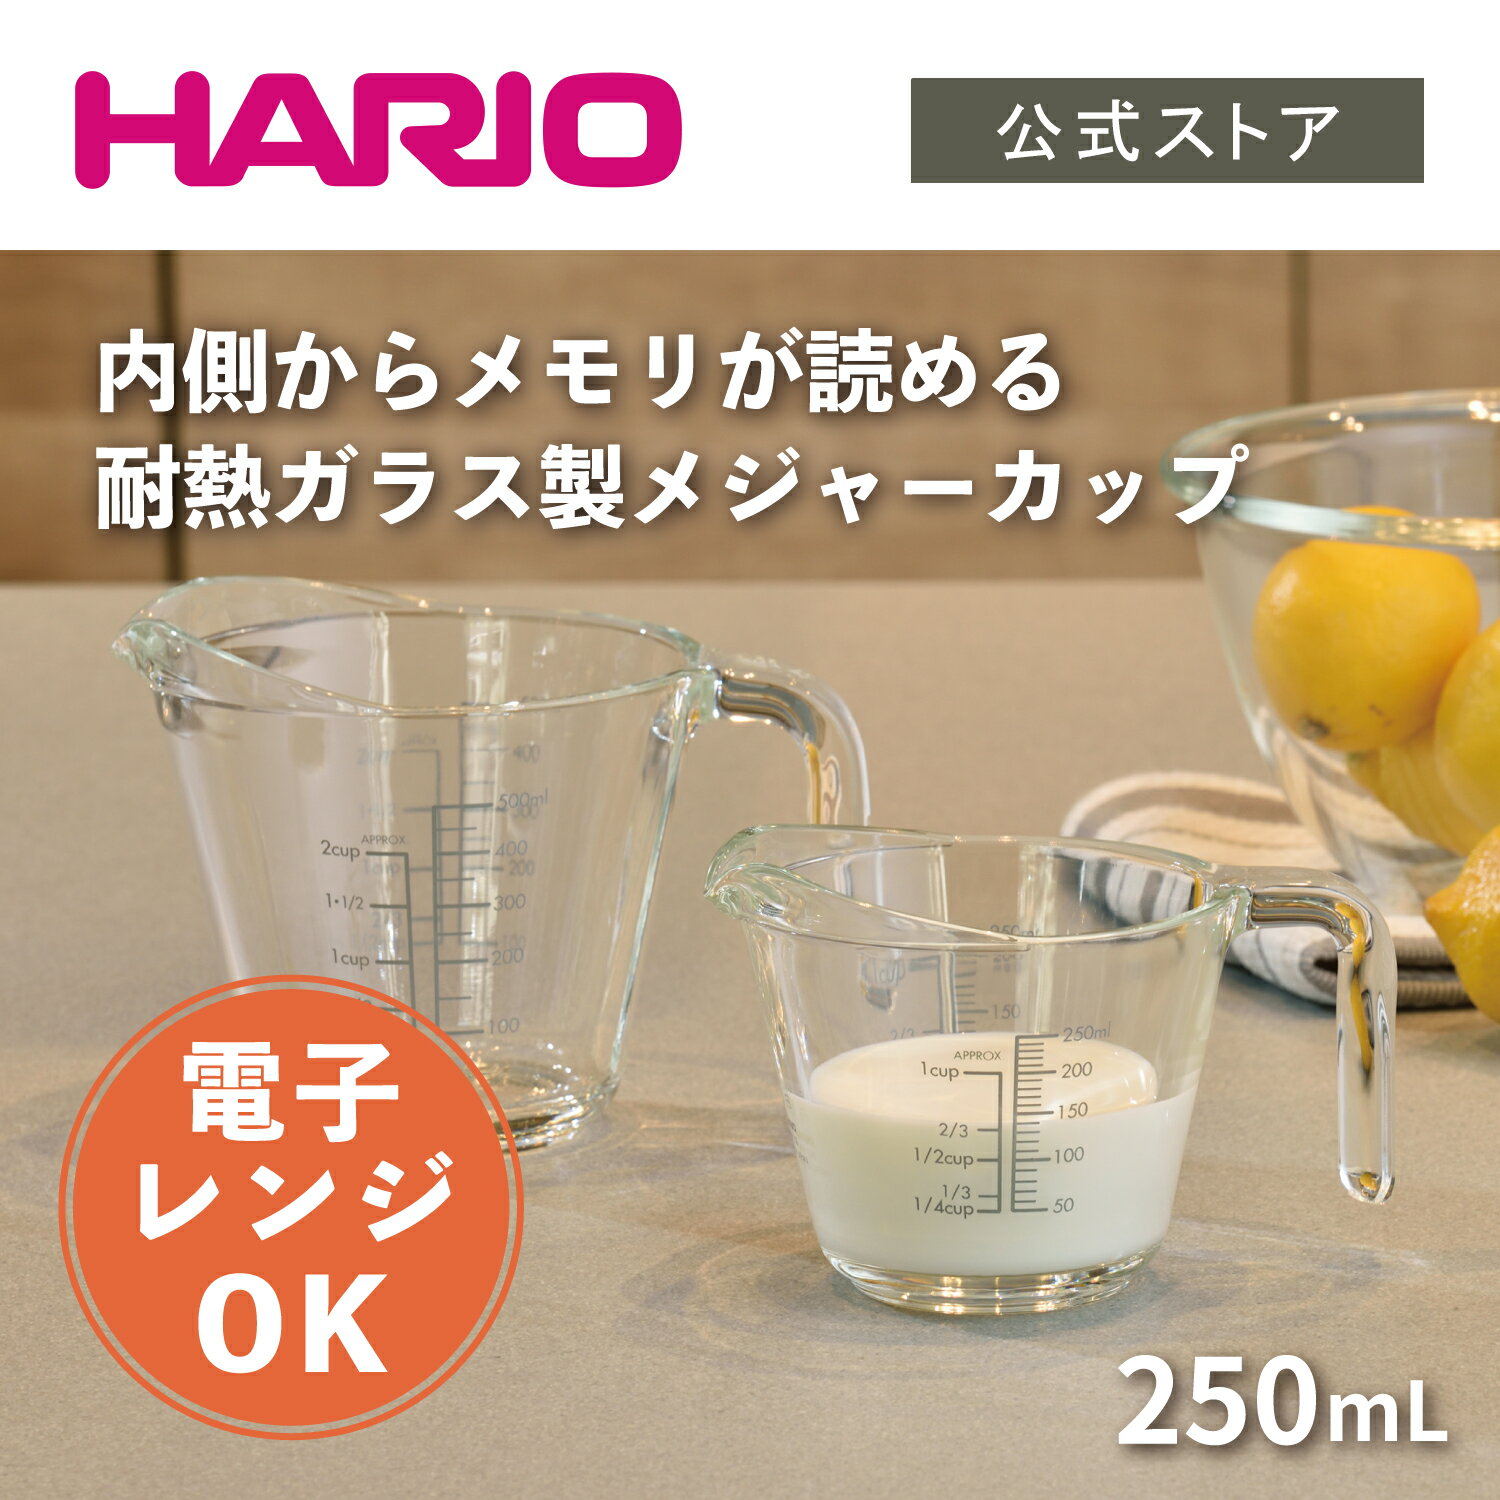 【公式ショップ】HARIO メジャーカップ・250 ハリオ 計量カップ メジャーカップ ガラス 耐熱ガラス メモリ付き 250ml 日本製